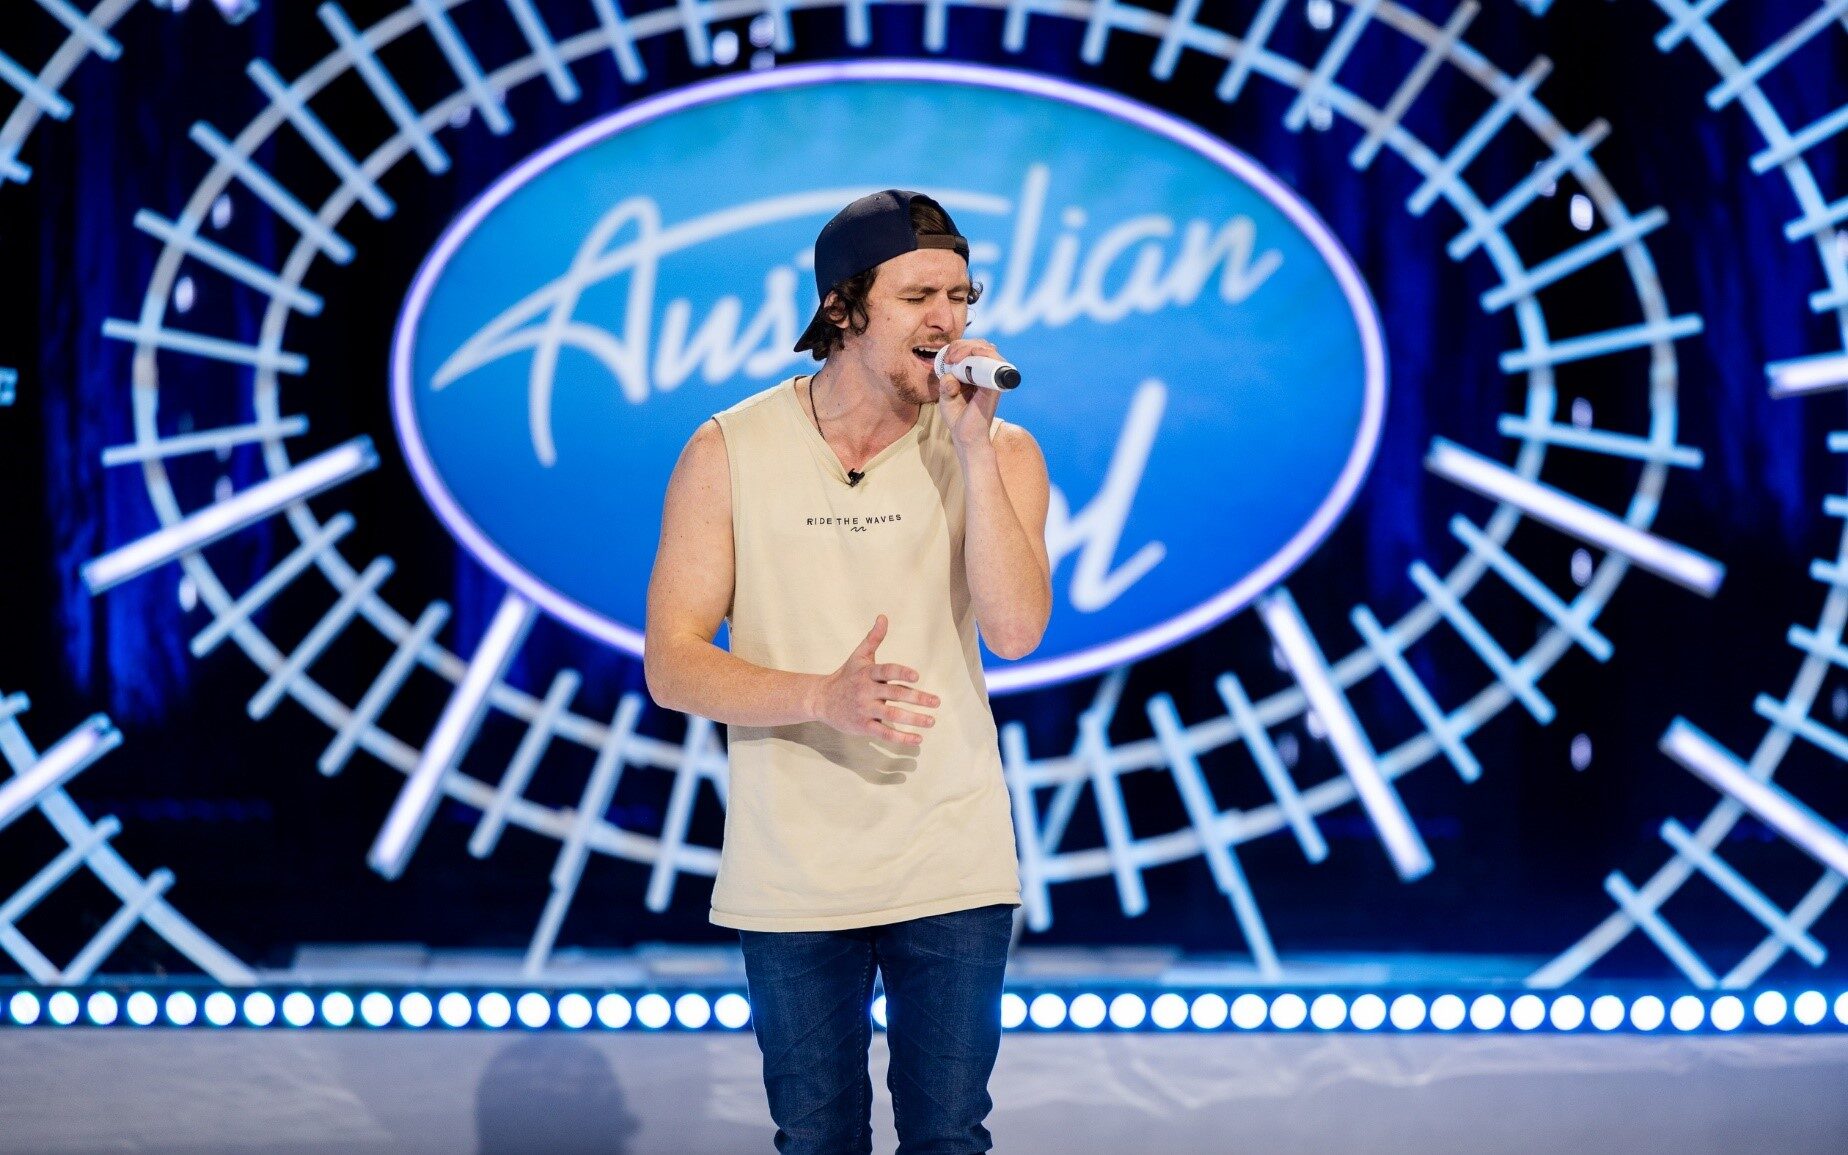 Australian Idol on Channel 7